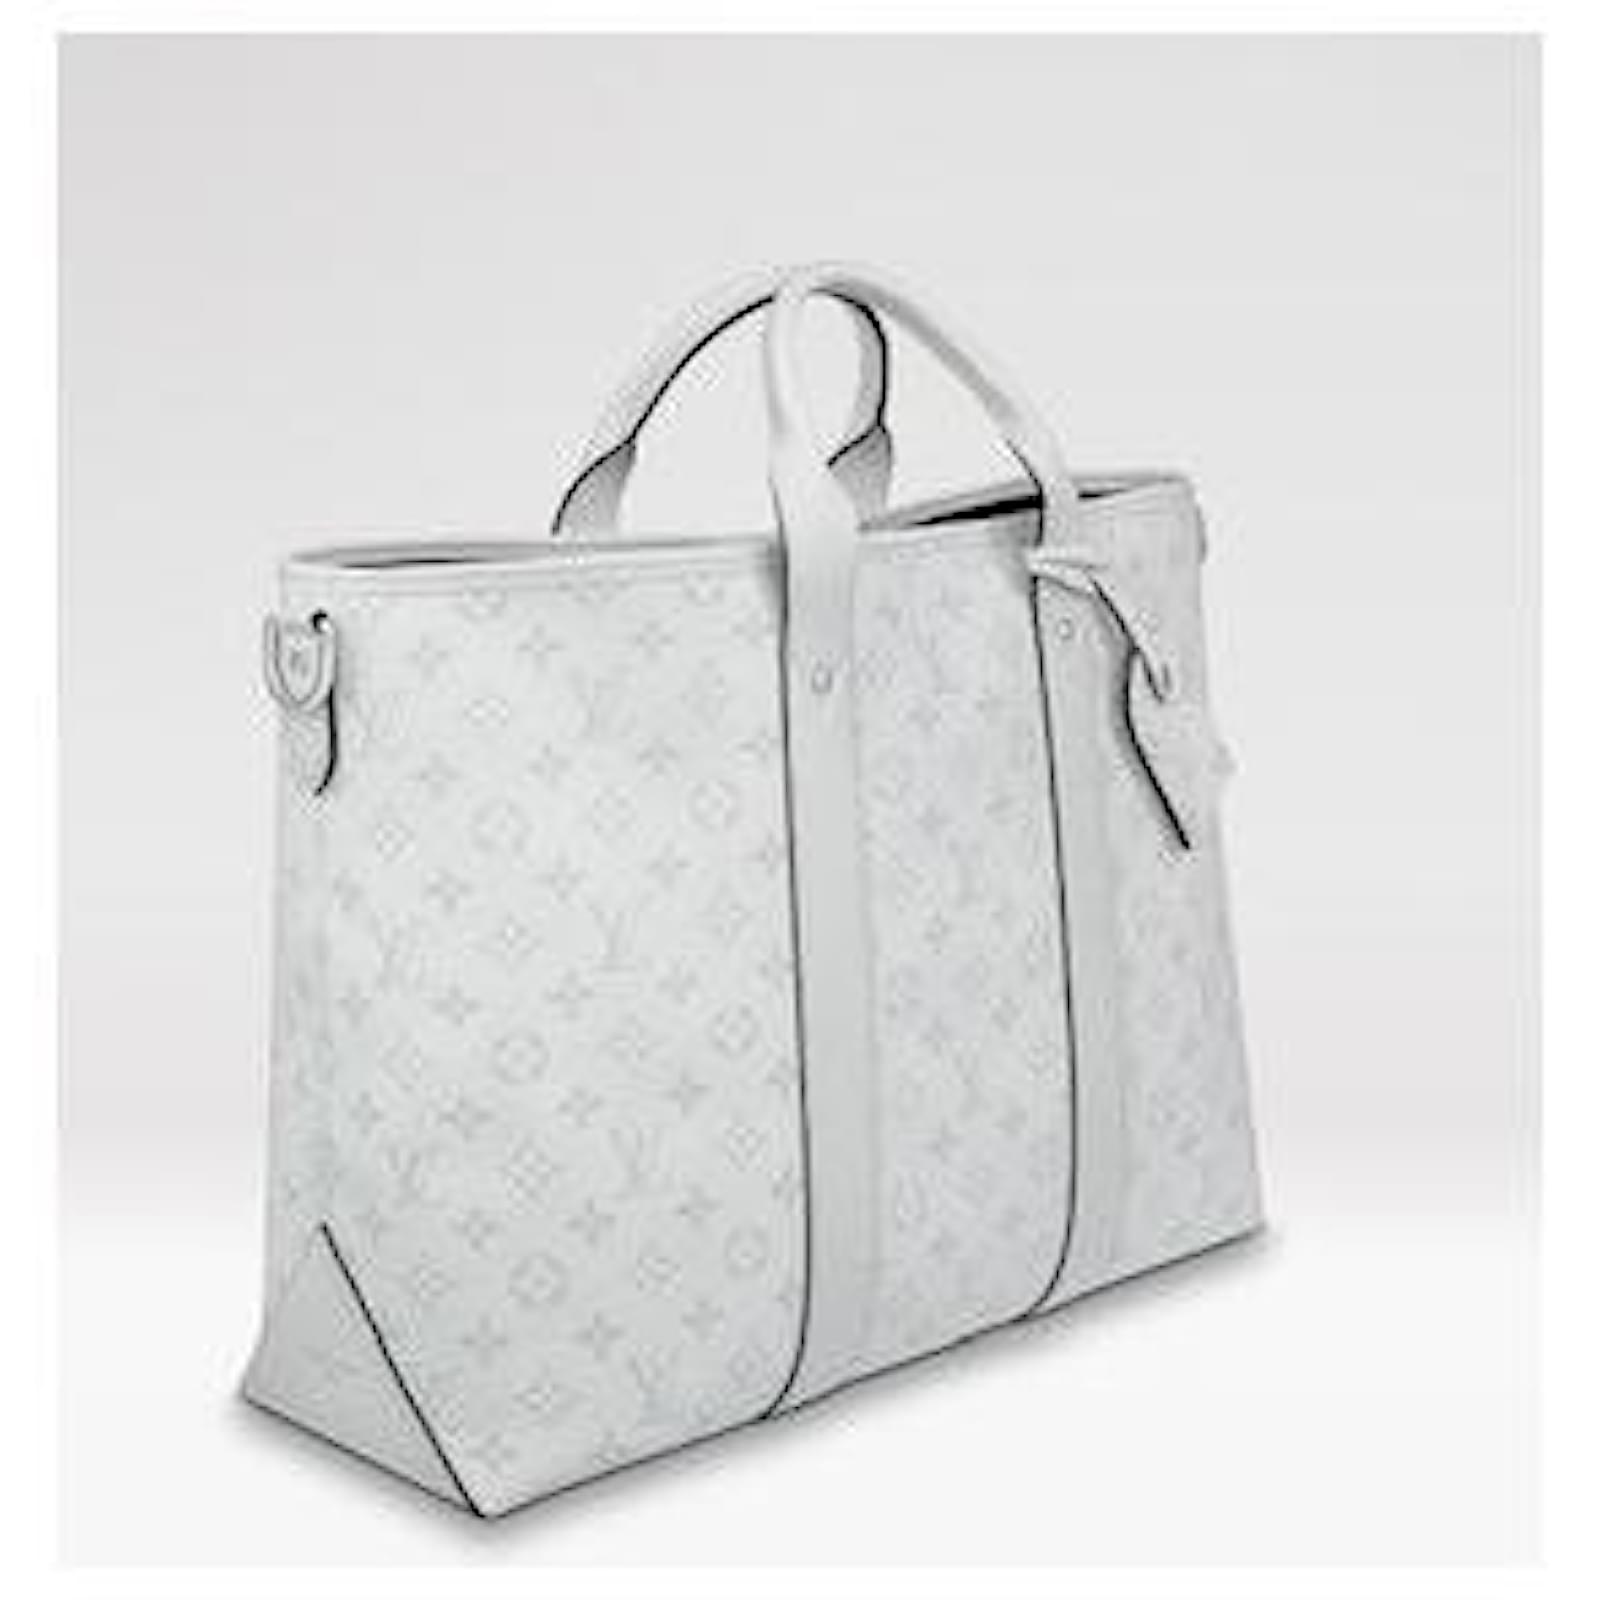 US$ 290.00 - Louis Vuitton - WEEKEND TOTE NM handbag - www